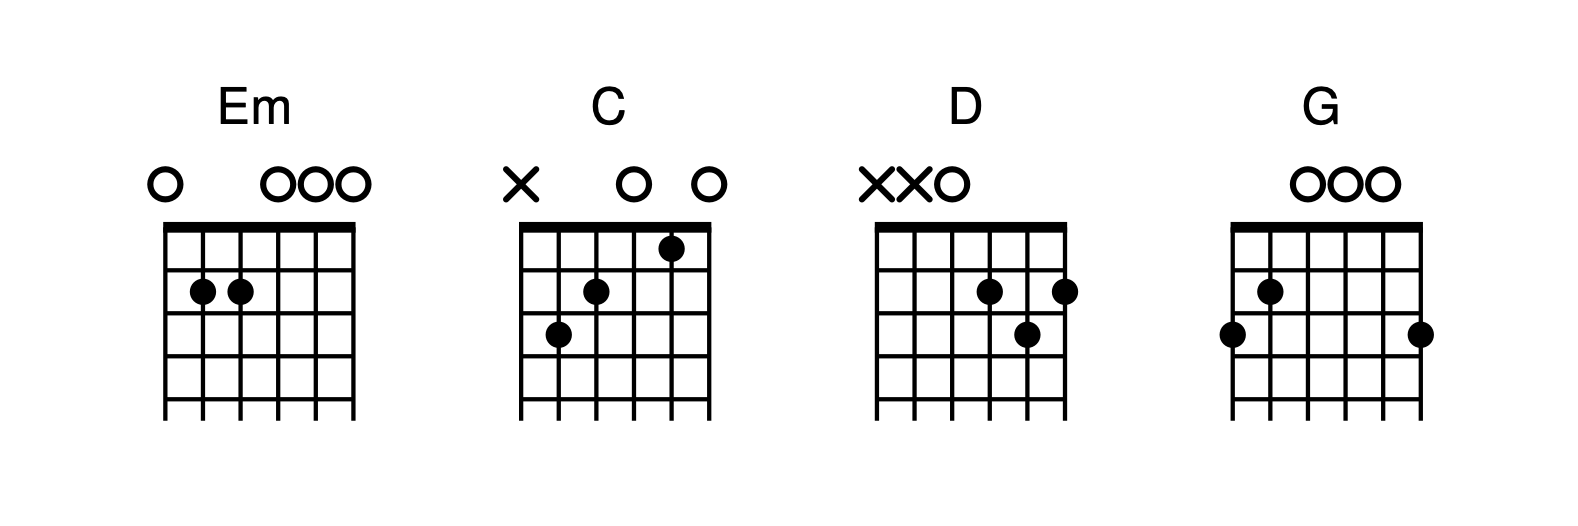 Diagramas de los acordes de guitarra para la canción Heart Of Gold de Neil Young